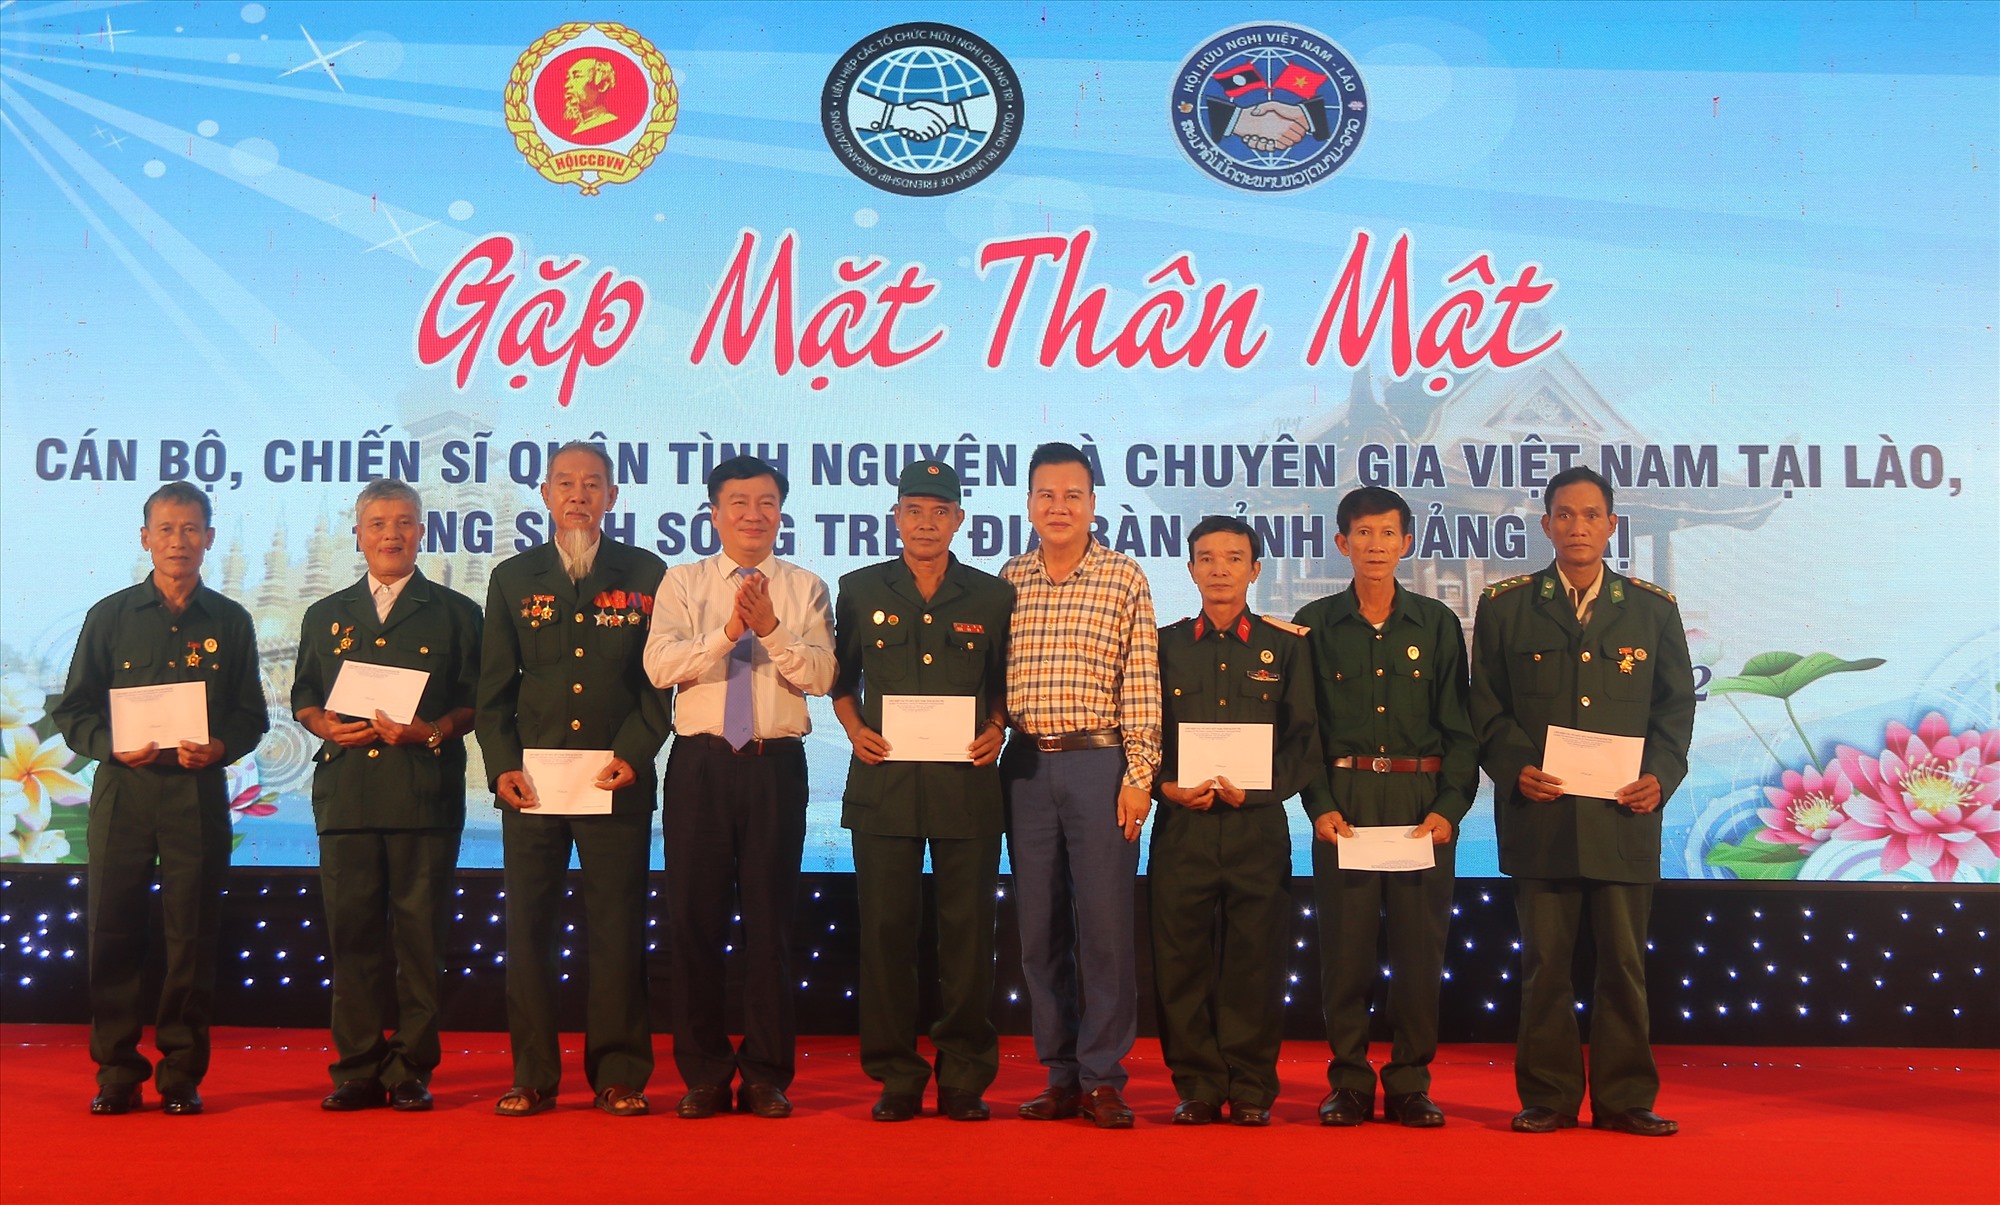 Chủ tịch Ủy ban MTTQ Việt Nam tỉnh Đào Mạnh Hùng tặng quà cho các cán bộ, chiến sĩ quân tình nguyện, chuyên gia Việt Nam từng công tác, chiến đấu tại Lào có hoàn cảnh khó khăn - Ảnh: N.B